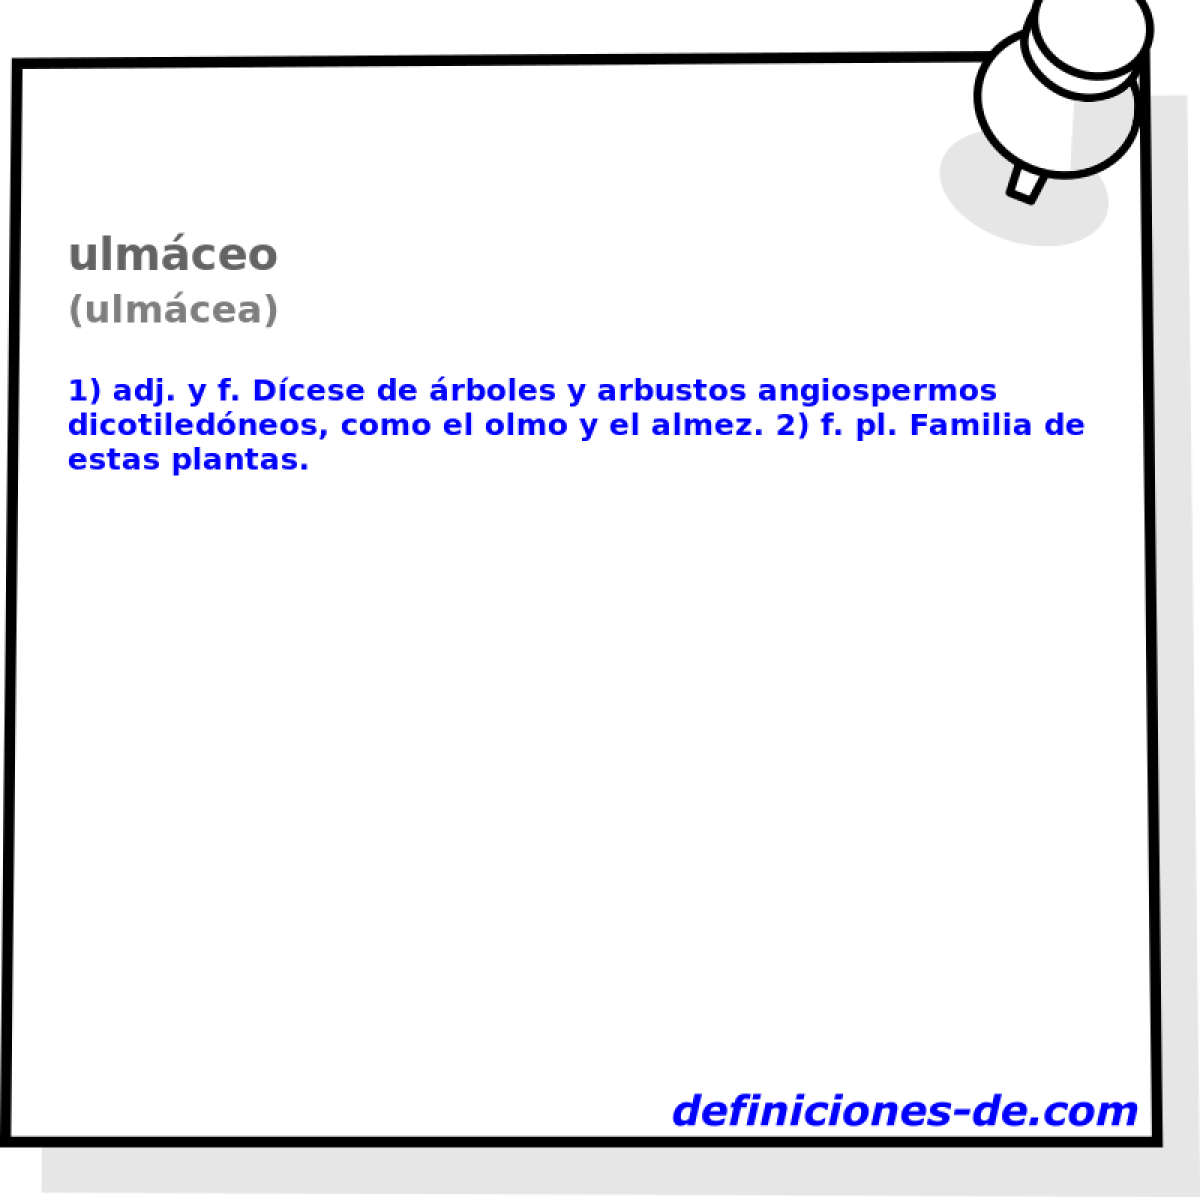 ulmceo (ulmcea)